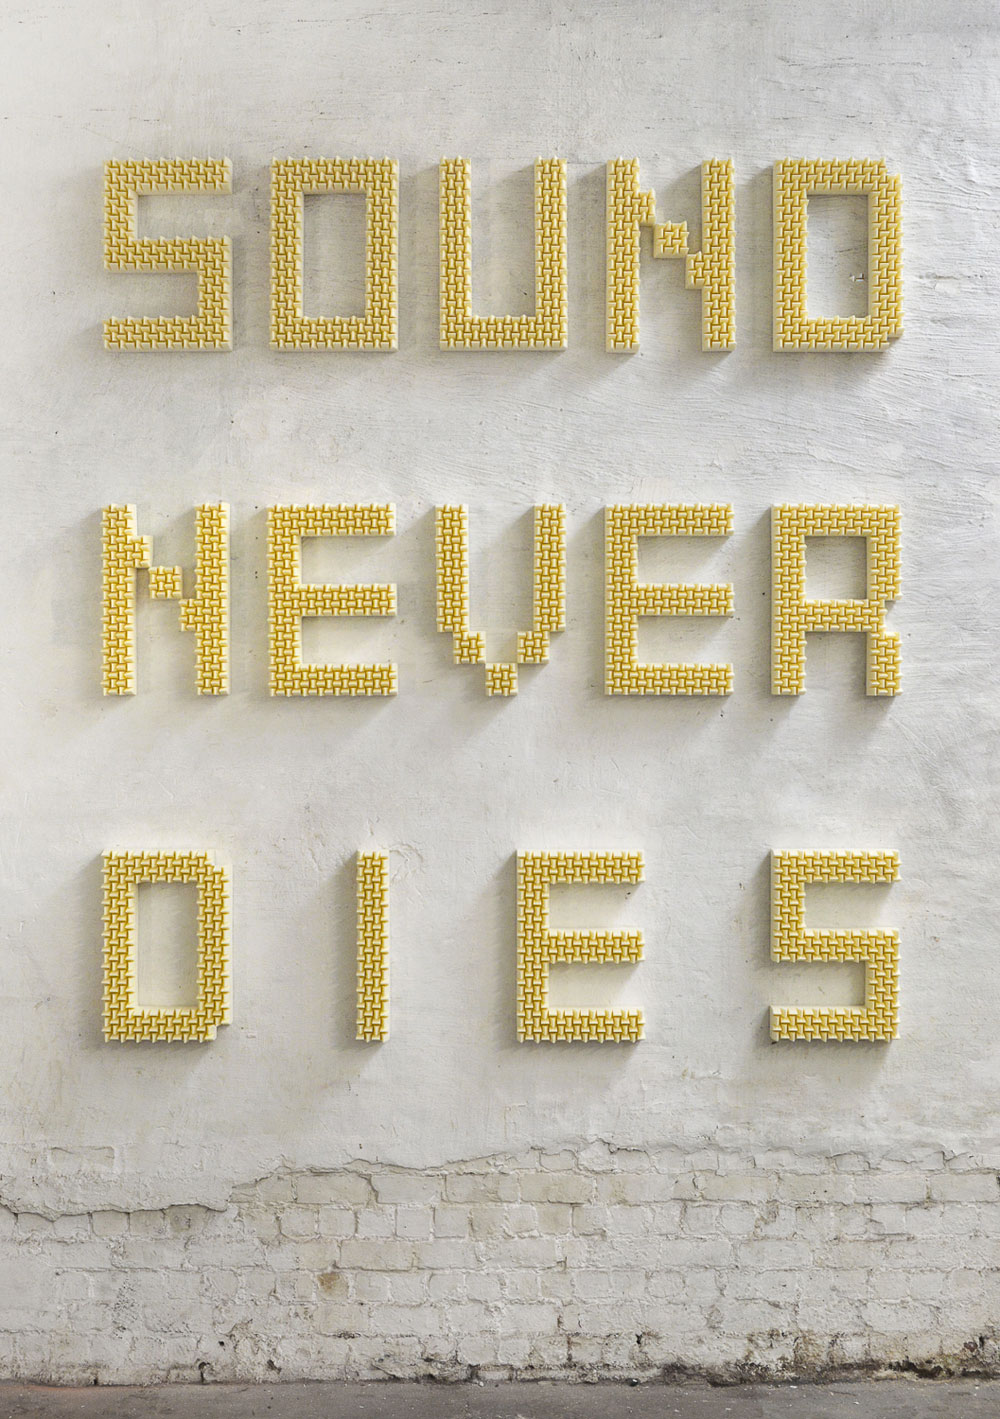 Sound Never Dies #2, 2015